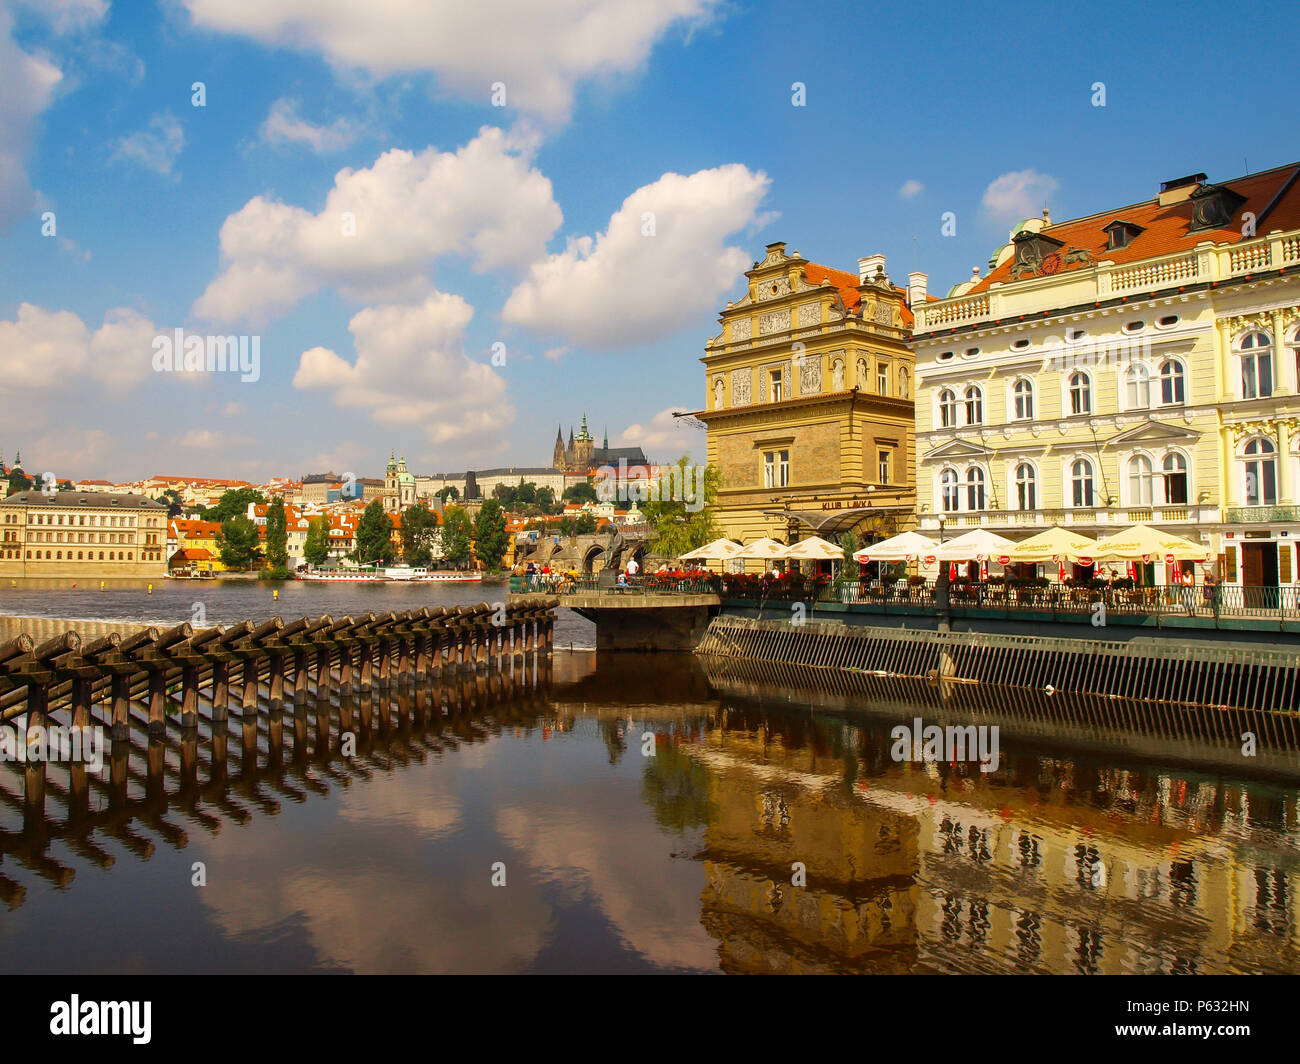 Vue urbaine avec la Vltava, le château de Prague et la Cathédrale St Vitus à Prague, République Tchèque Banque D'Images